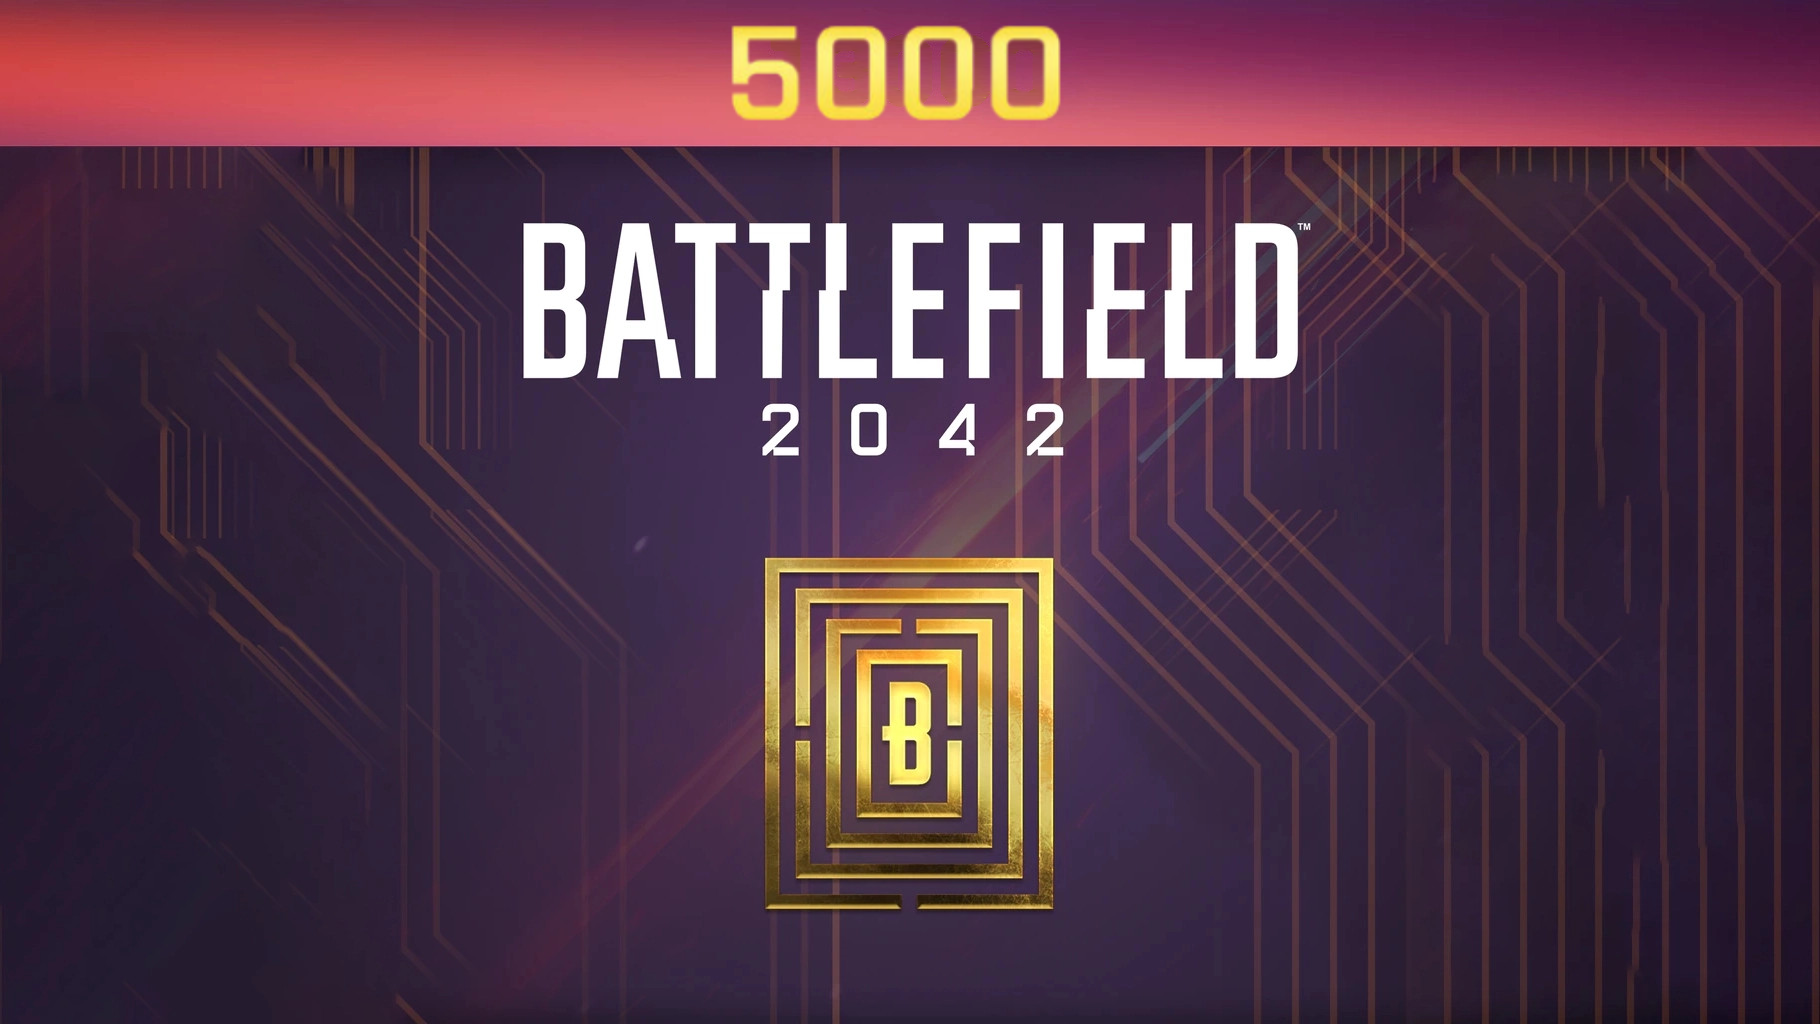 Battlefield 2042 - 5000 BFC Balance XBOX One / Xbox Series X|S CD Key $40.67